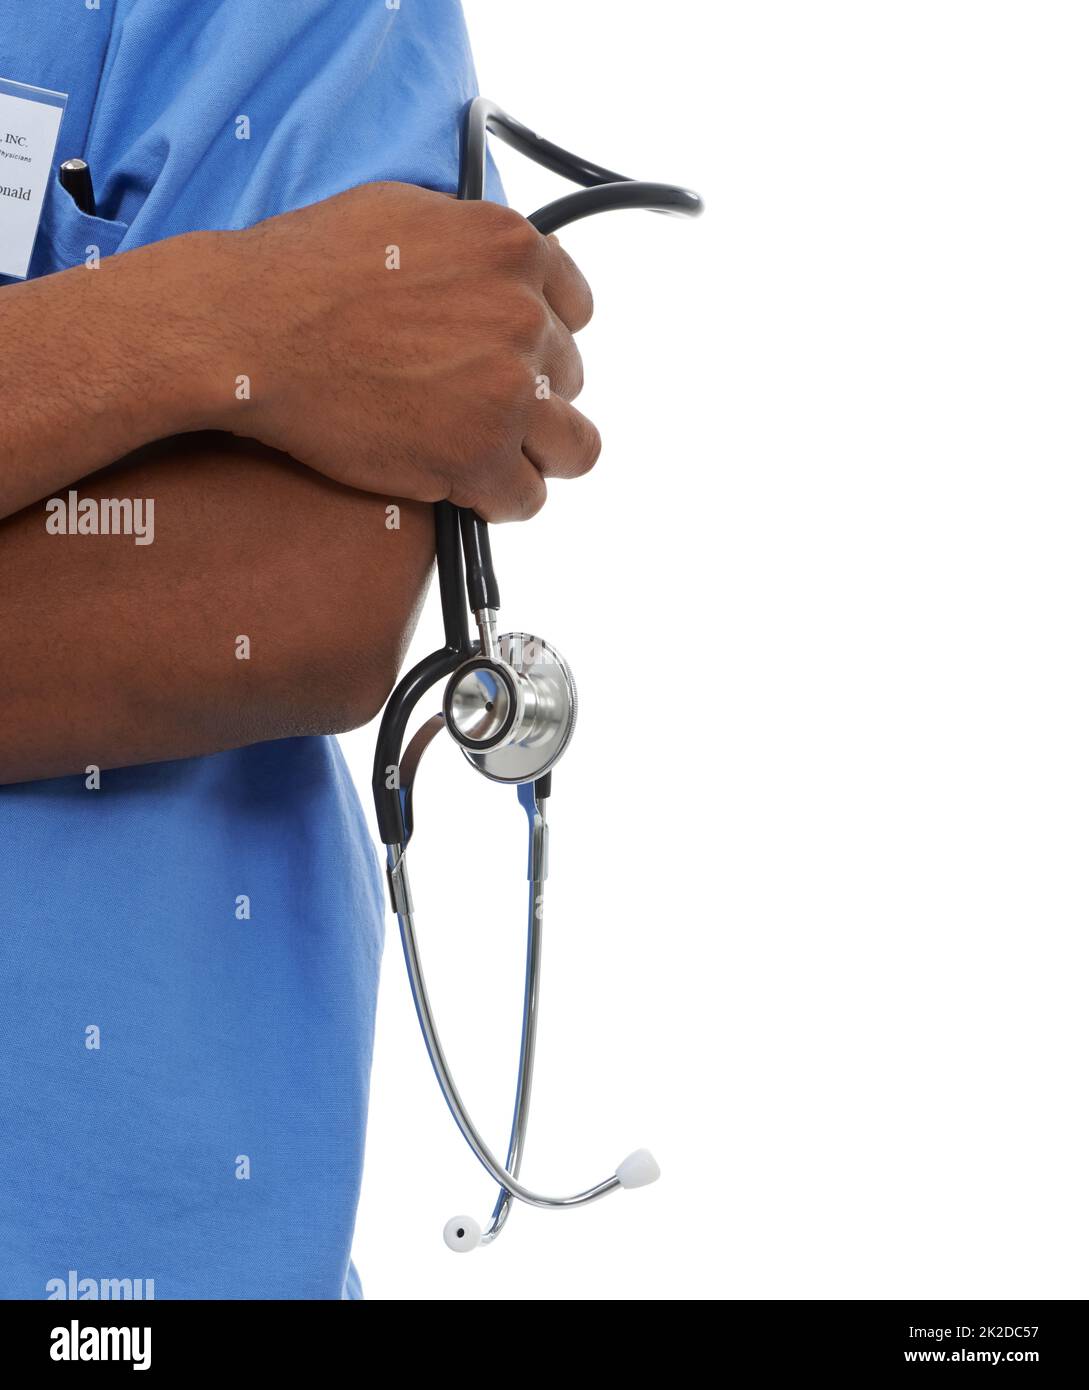 Gesundheitsfragen ernst nehmen. Beschnittene Ansicht eines Arztes mit gefalteten Armen und einem Stethoskop in seiner einen Hand. Stockfoto